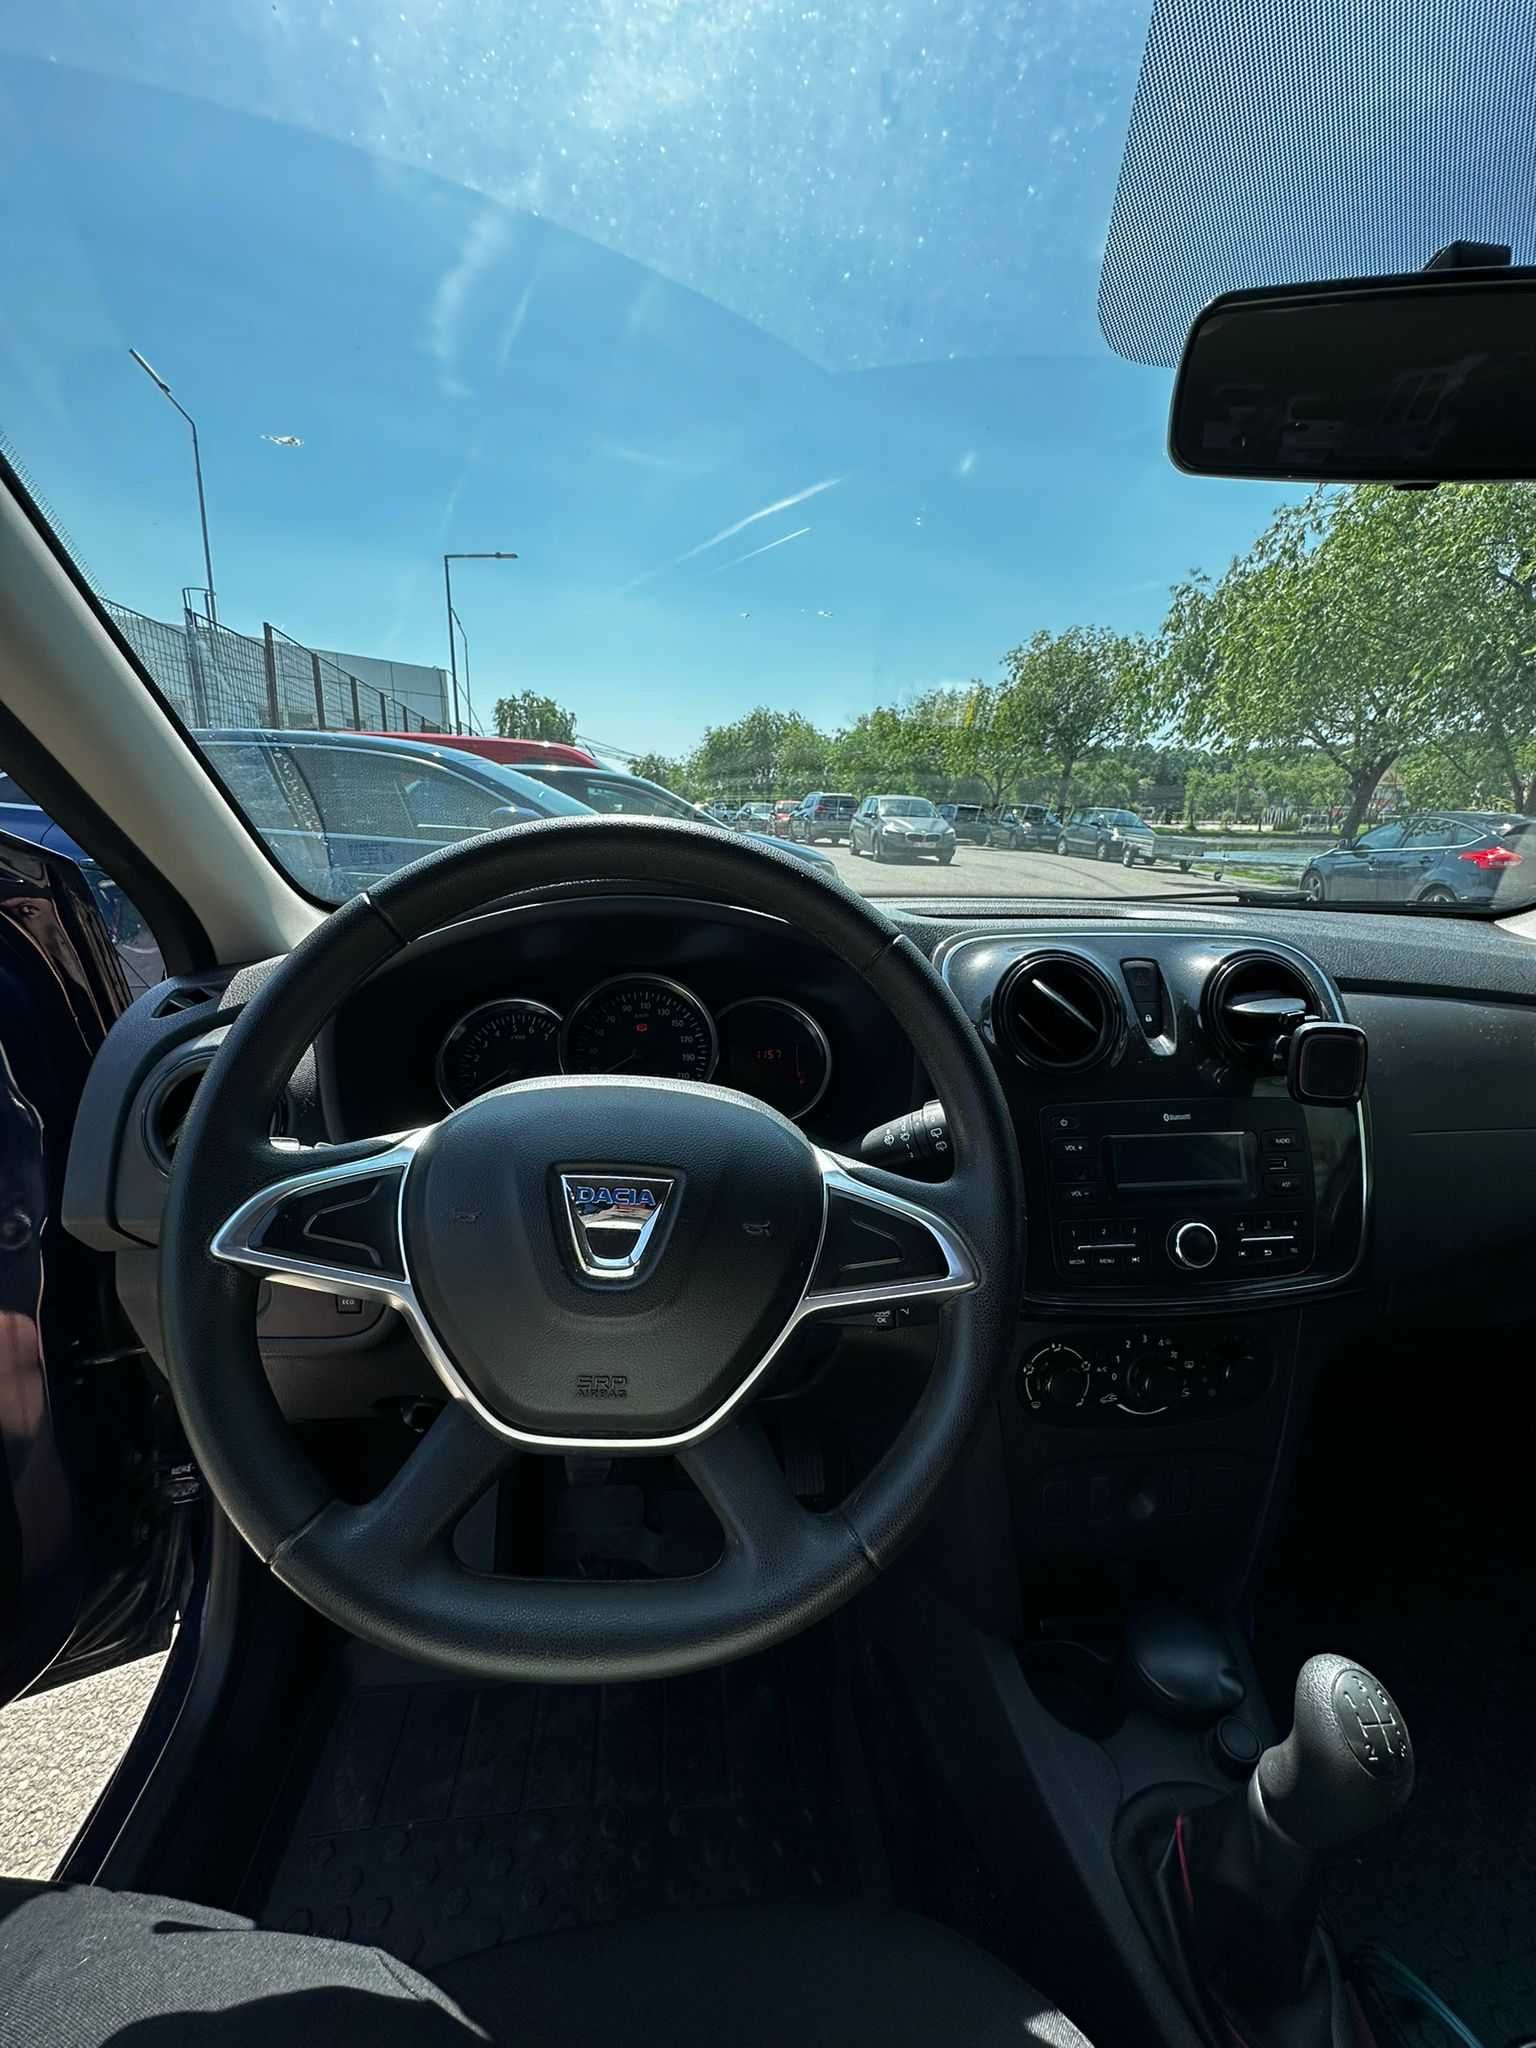 Dacia Sandero 2018 73500km 0.9 TCE un singur propietar.